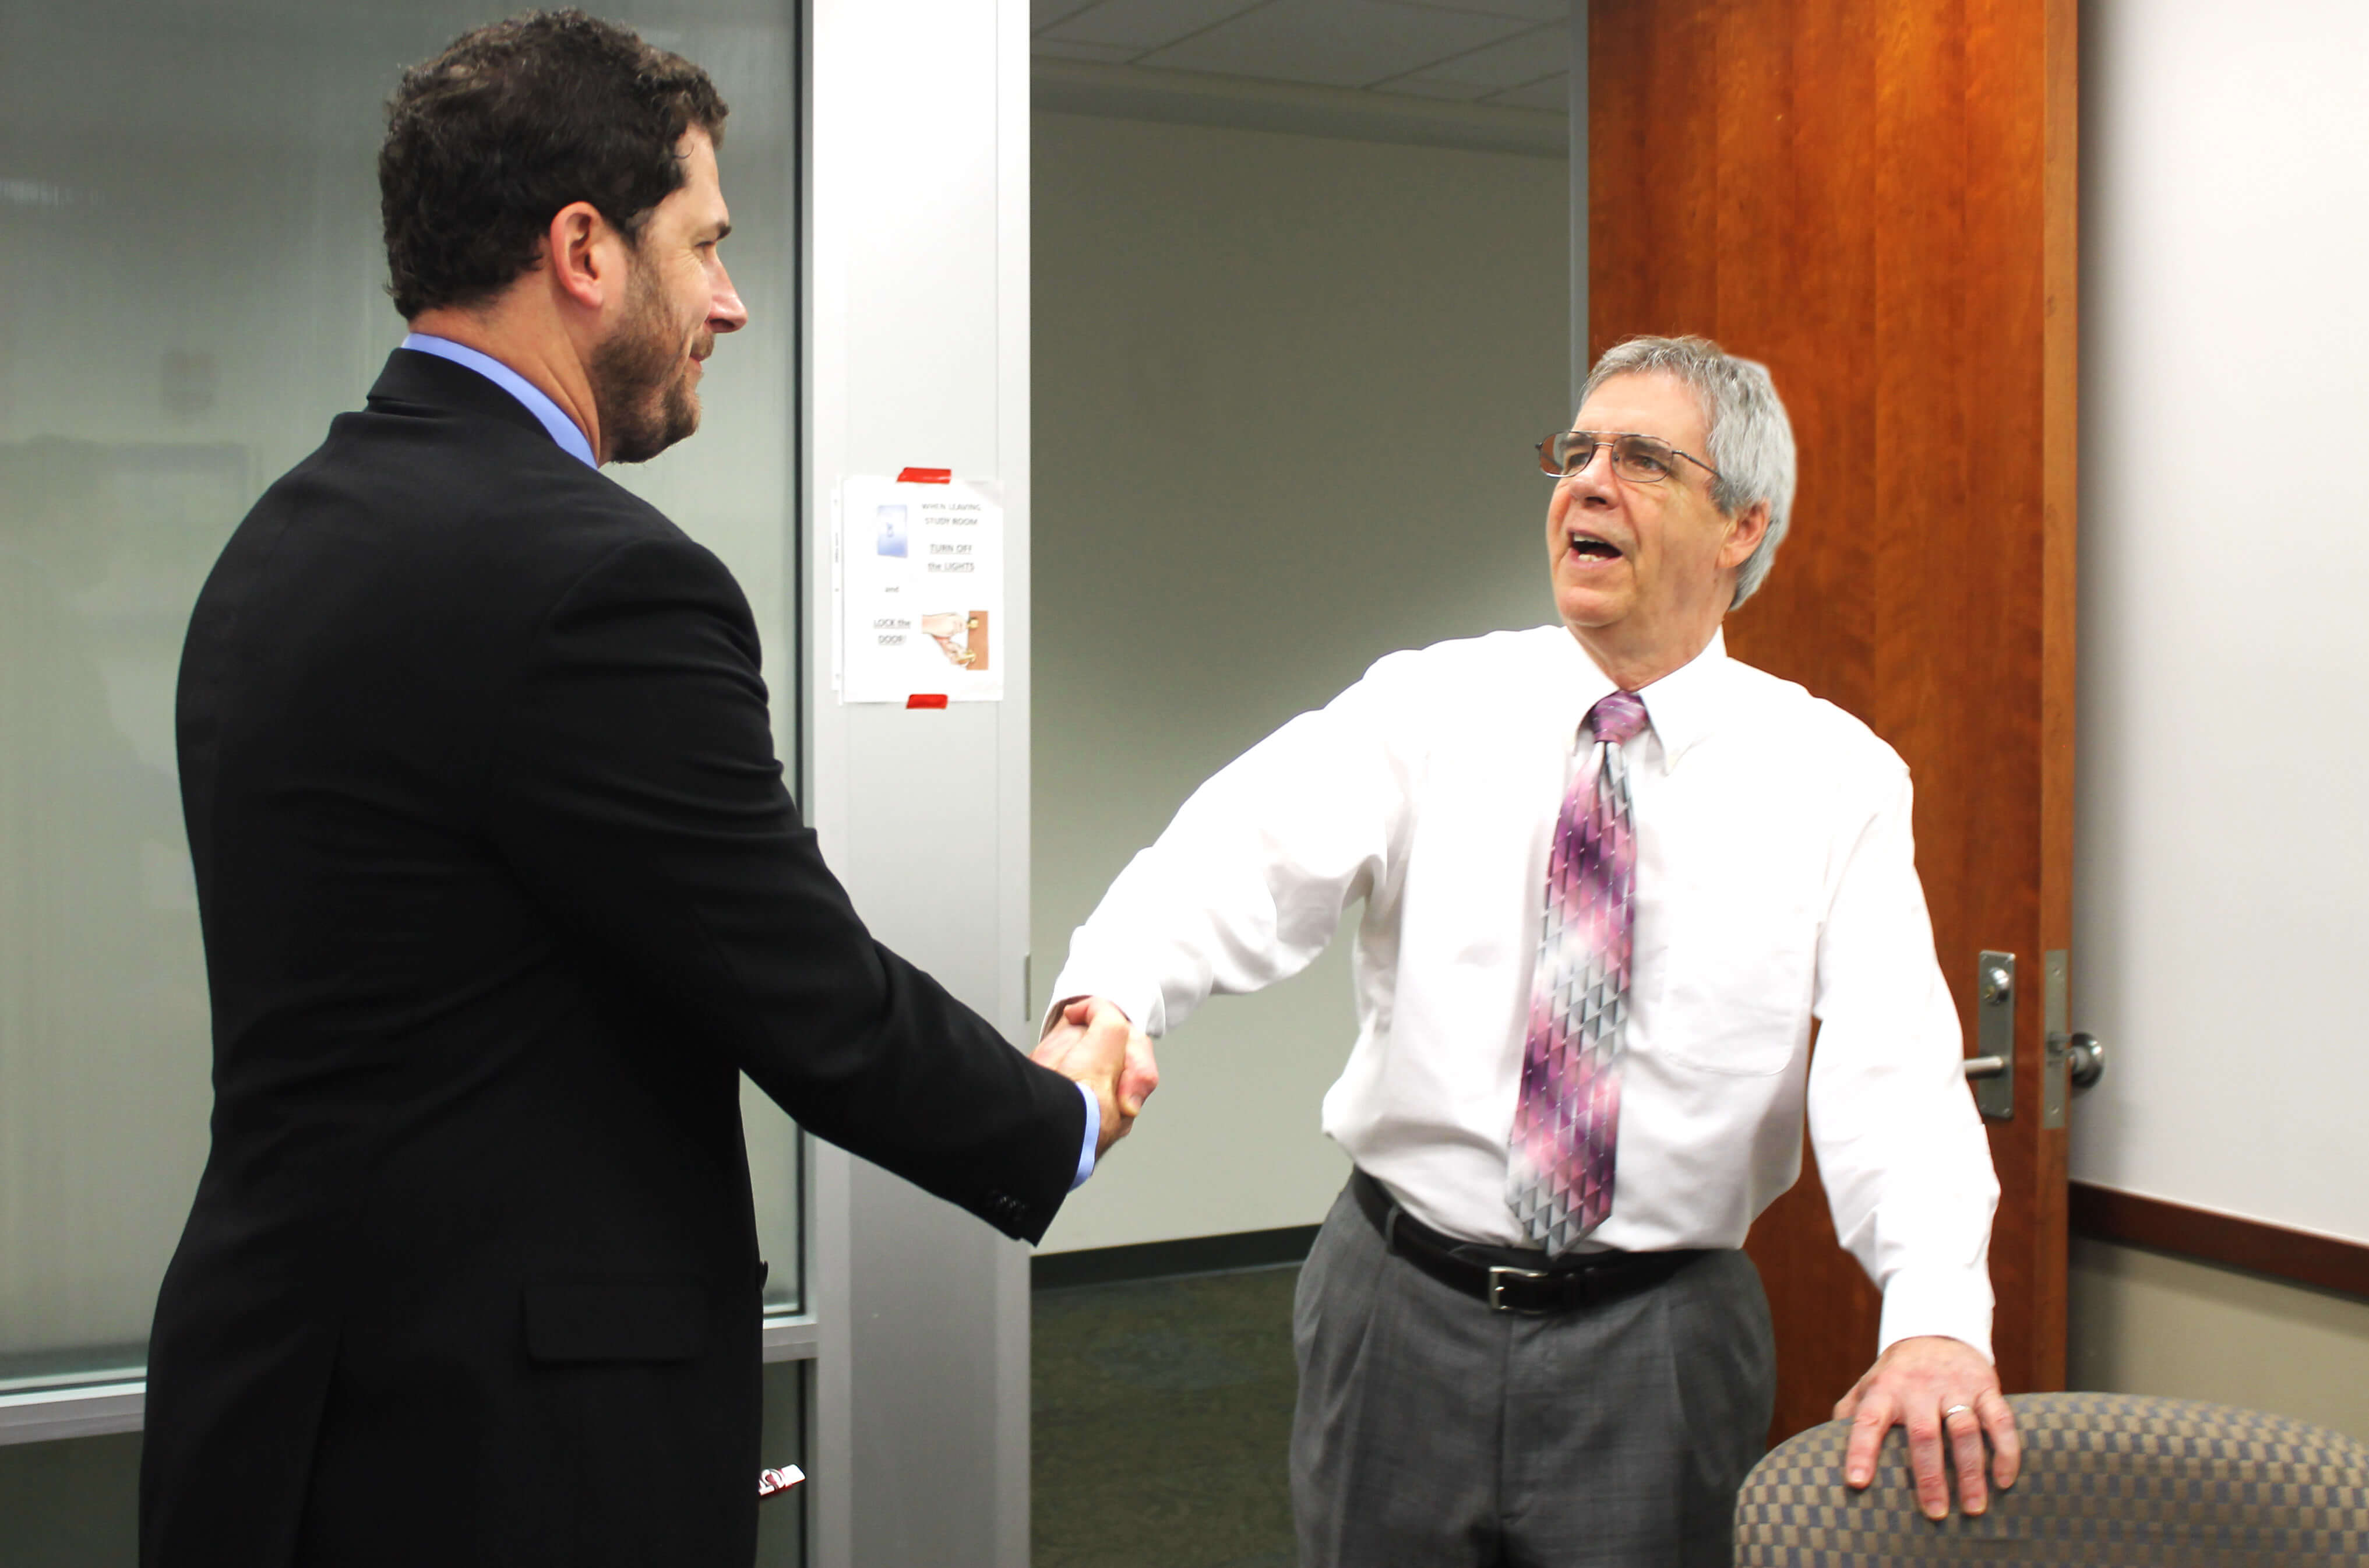 Handshake in board room